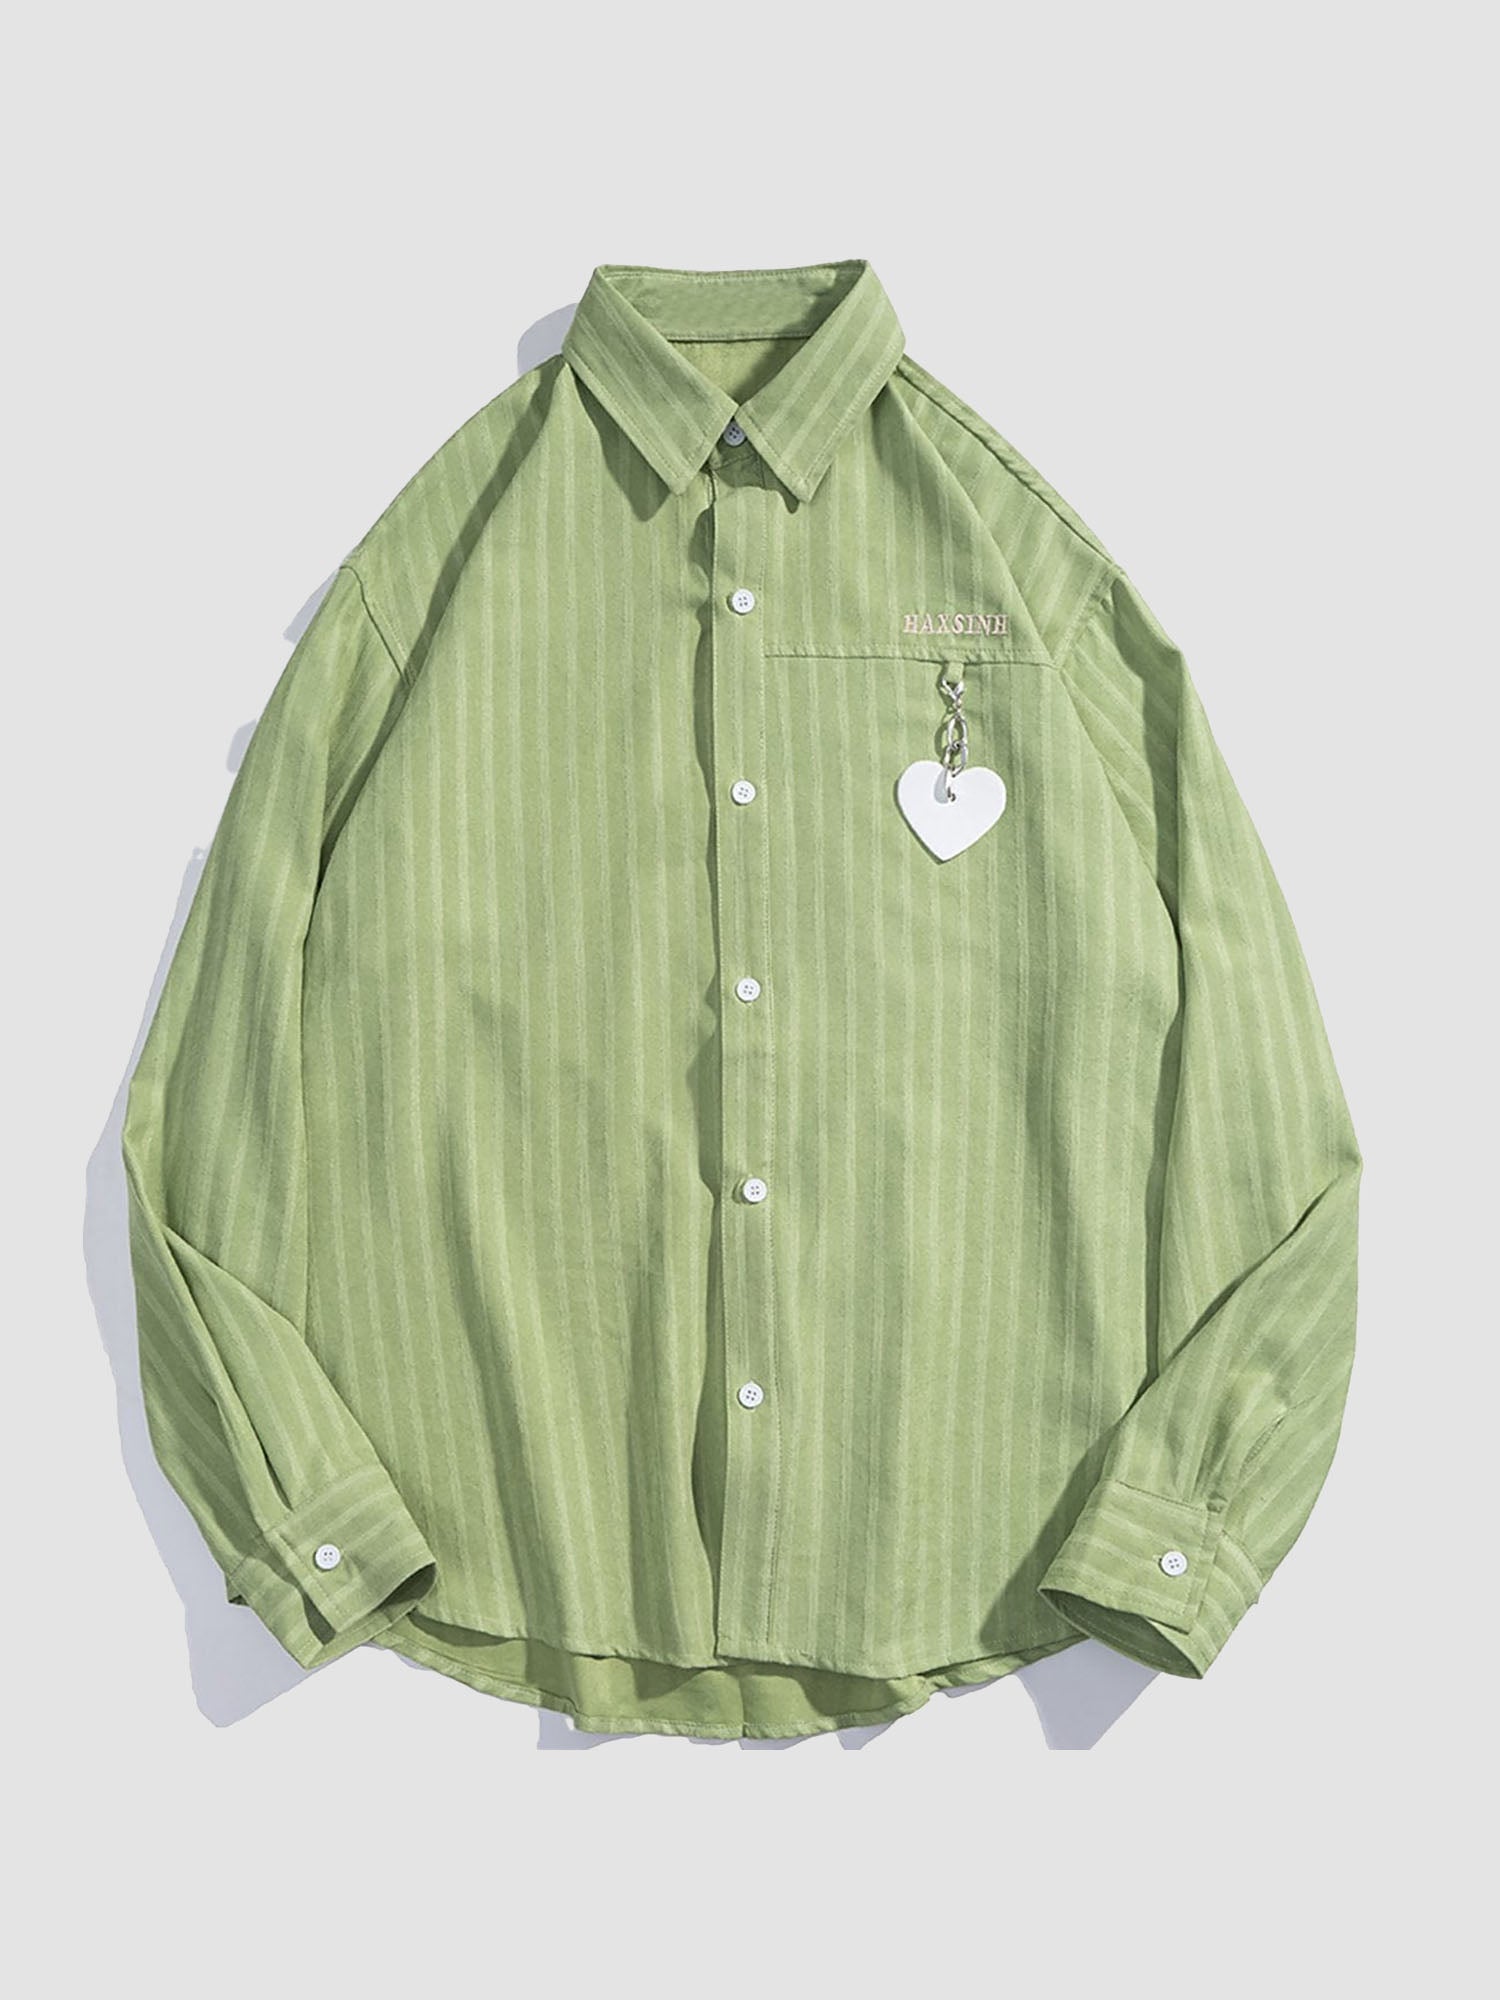 JUSTNOTAG Hollow Heart Long-sleeved Shirts